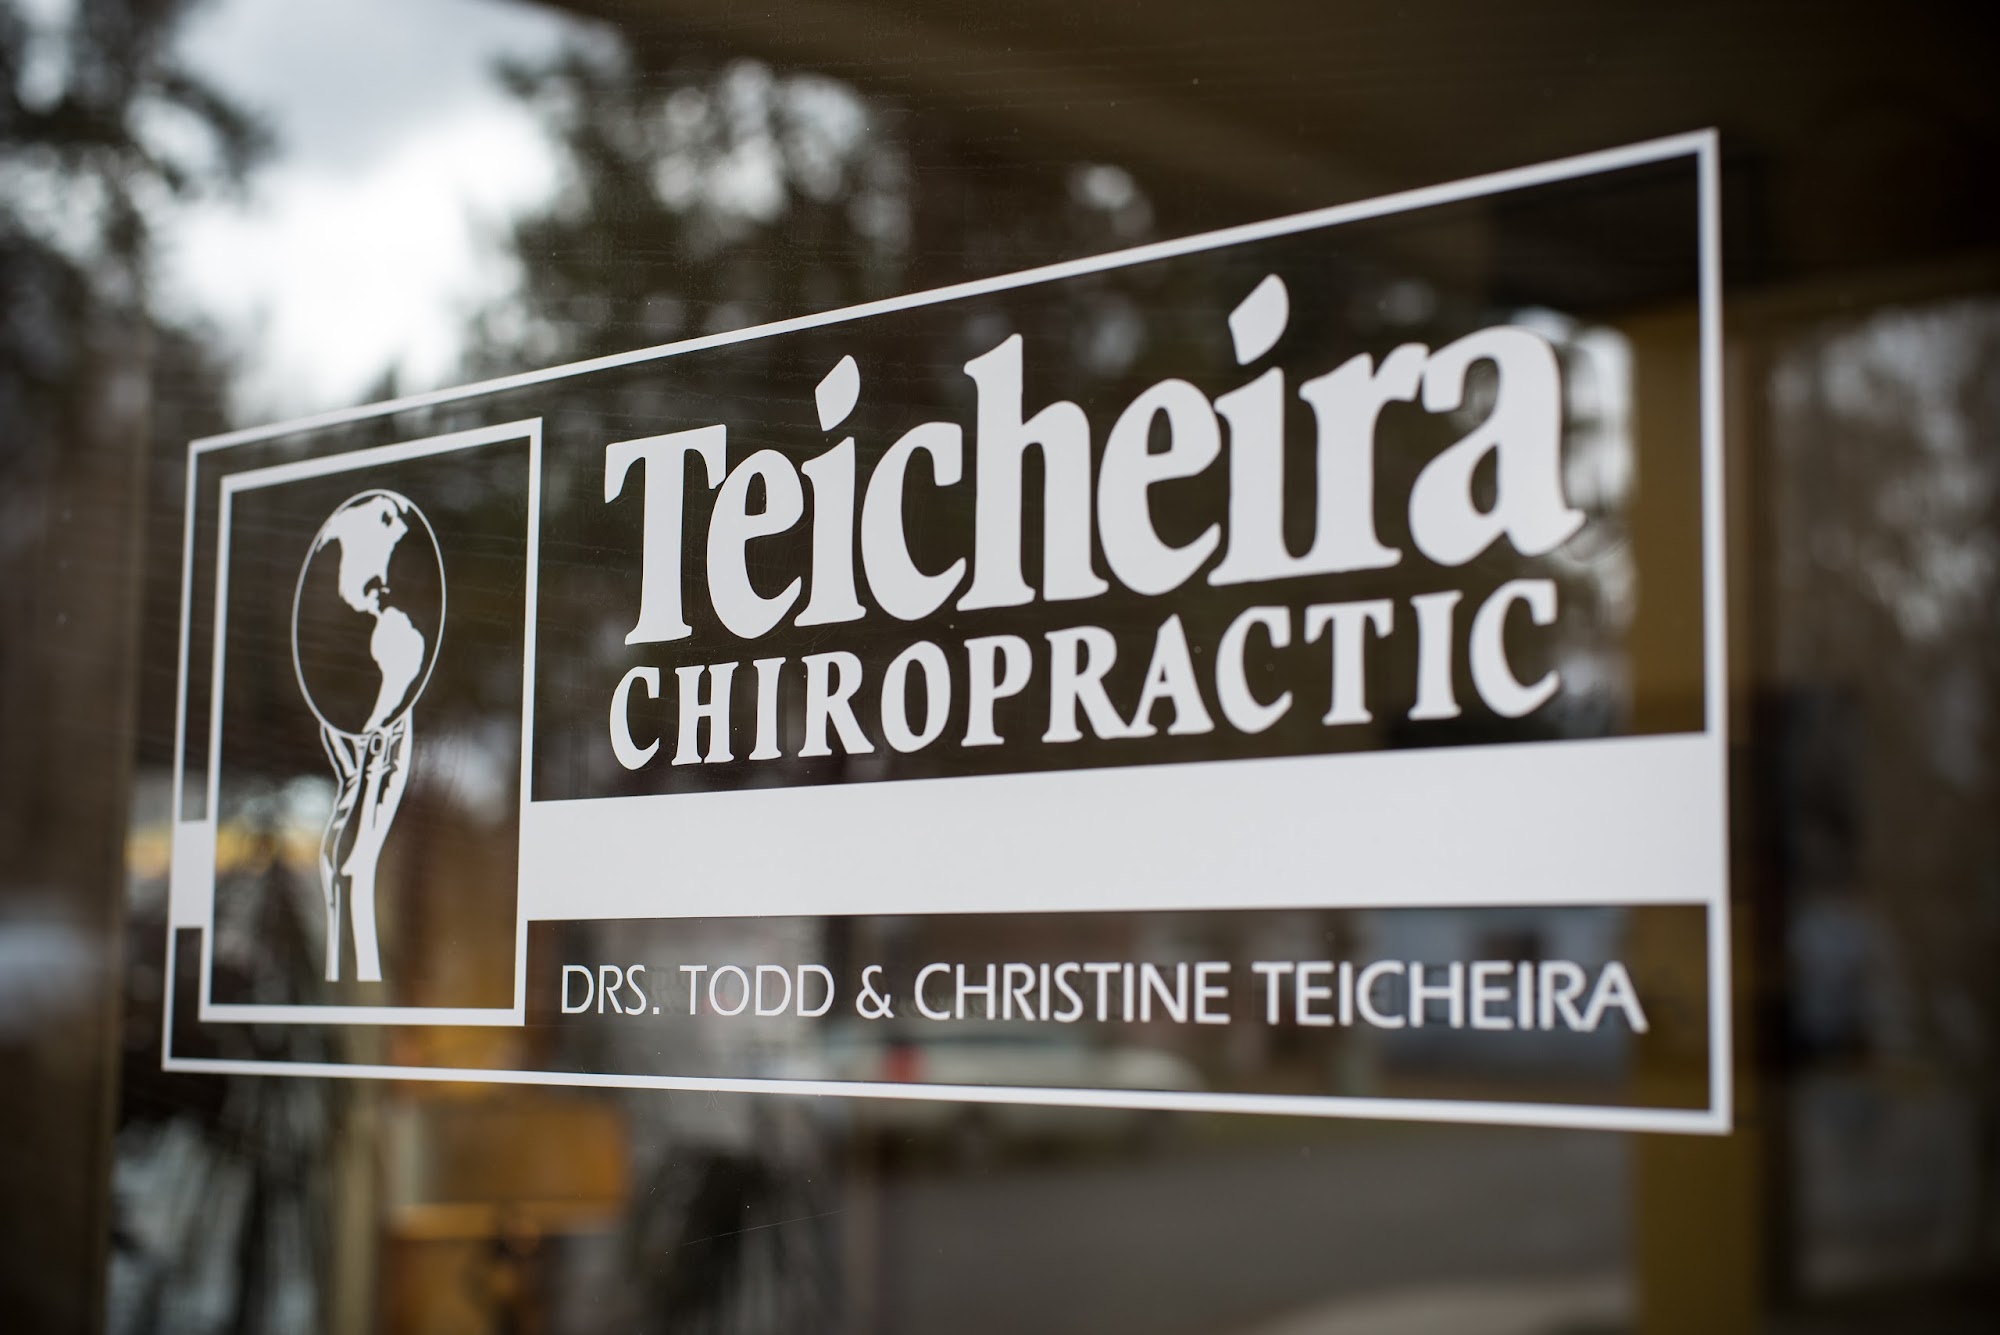 Teicheira Chiropractic Center